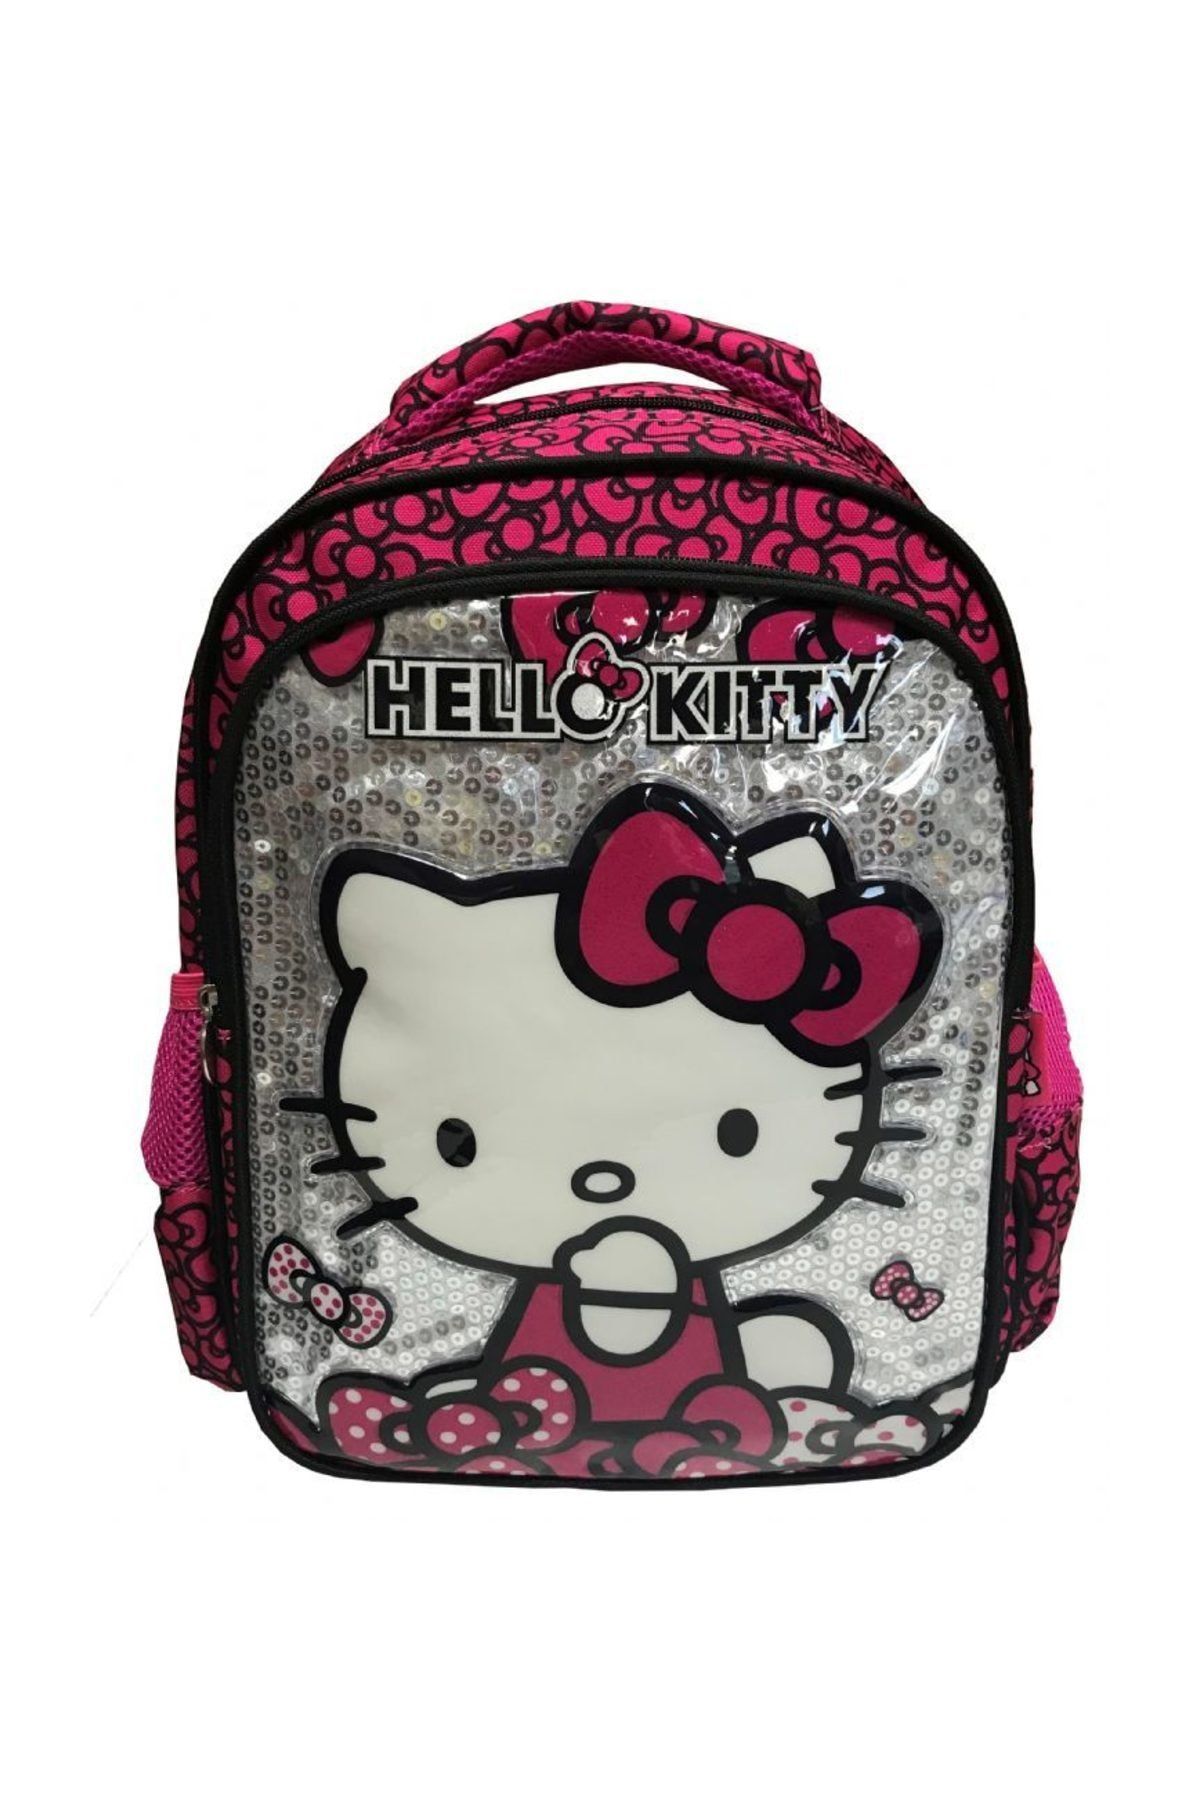 Hakan Çanta 87529 Hello Kitty Kız Çocuk Okul Çantası